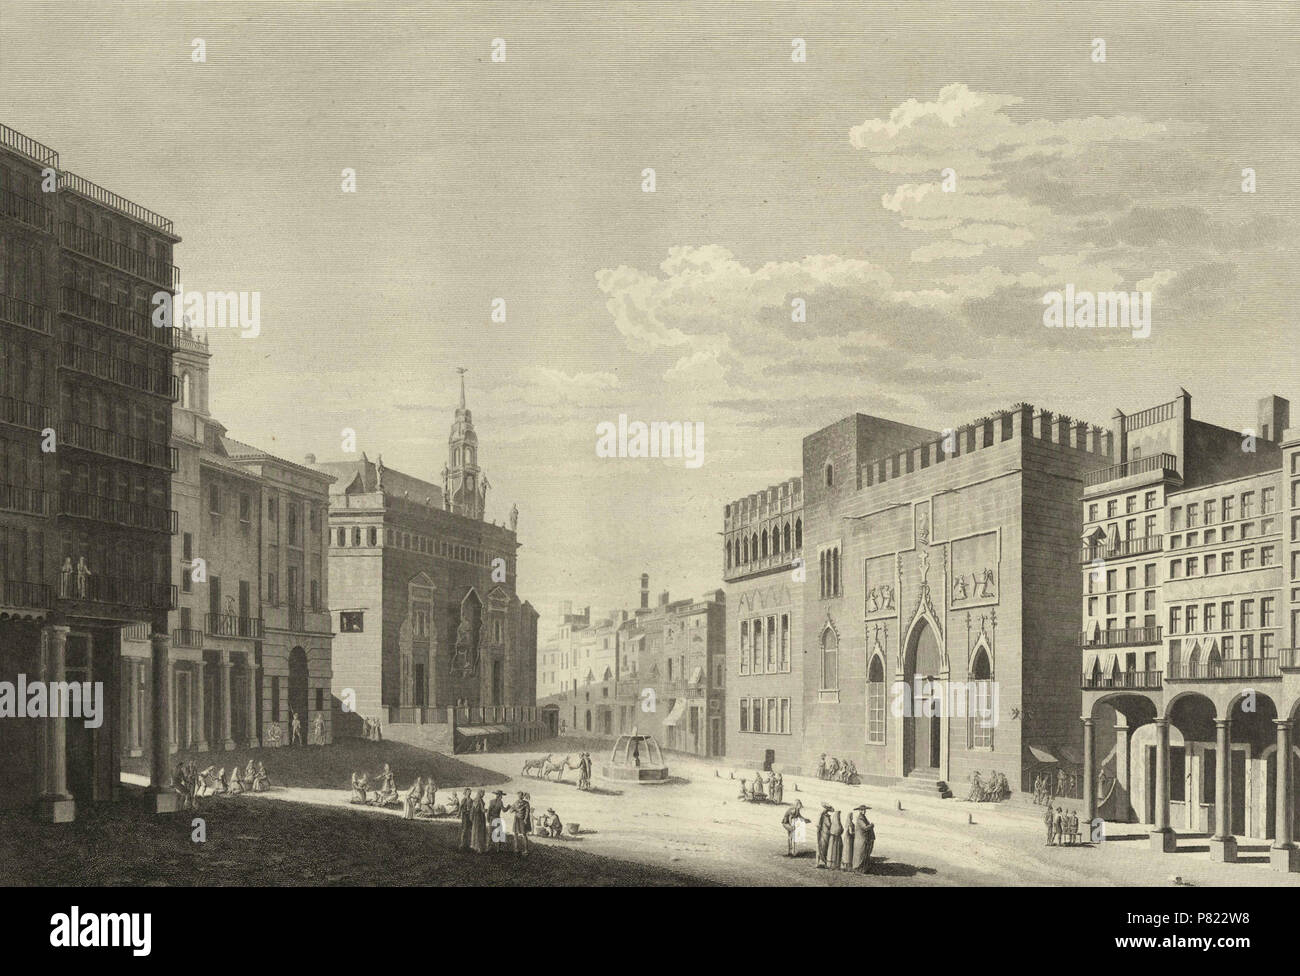 Español: Plaza del Mercado de Valencia. 1811 3 1806-1820, Voyage pittoresque et historique de l'Espagne, tomo I, Plaza del Mercado de Valencia (cropped) Stock Photo